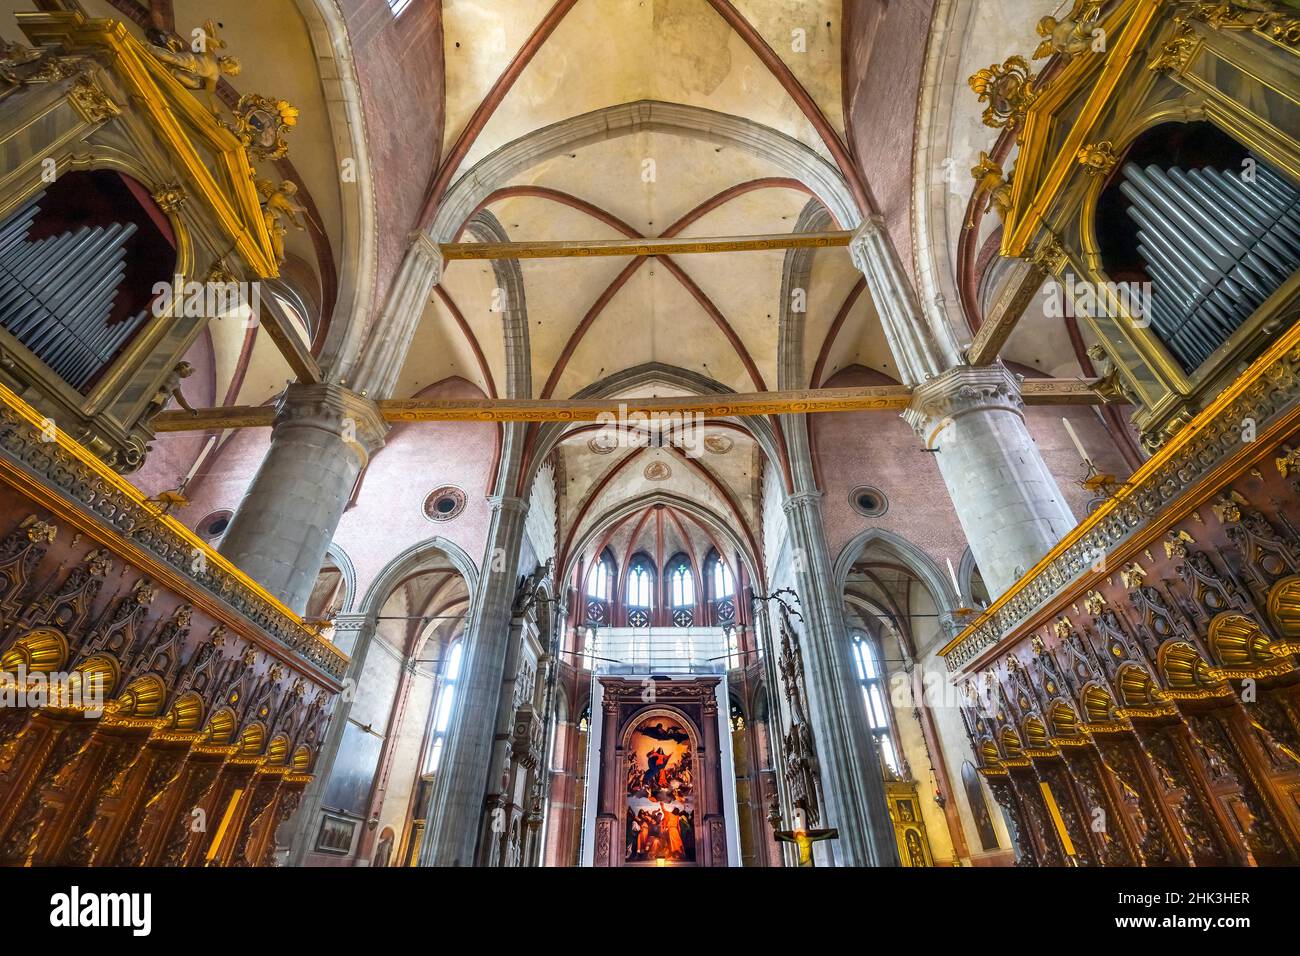 Orgue de chœur, peinture de la Vierge Marie de Titien Assomption au ciel, Eglise Santa Maria Gloriosa de Frari, San Polo, Venise, Italie. Comple de l'église Banque D'Images